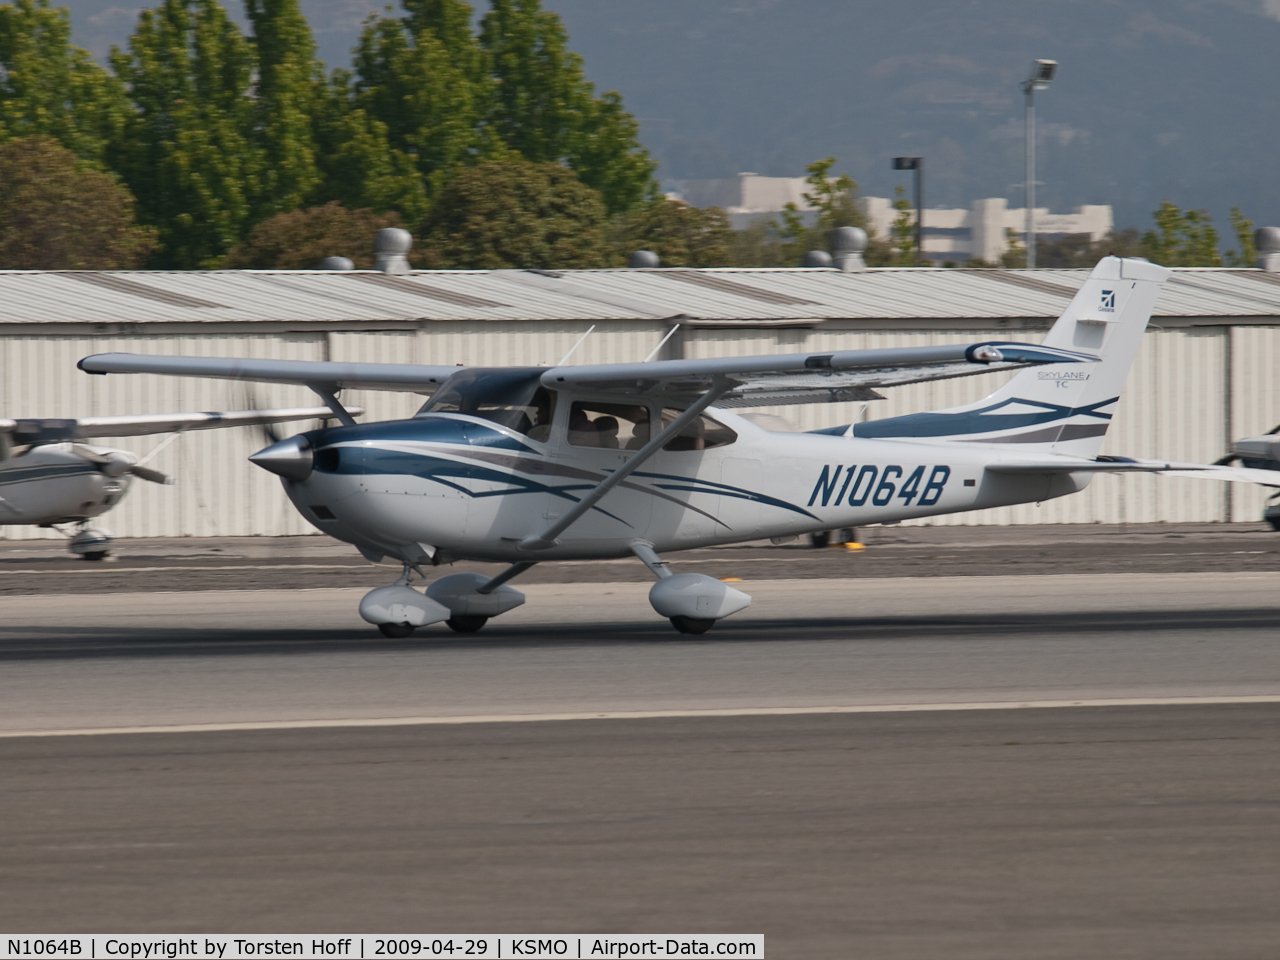 N1064B, 2007 Cessna T182T Turbo Skylane C/N T18208797, N1064B departing from RWY 21